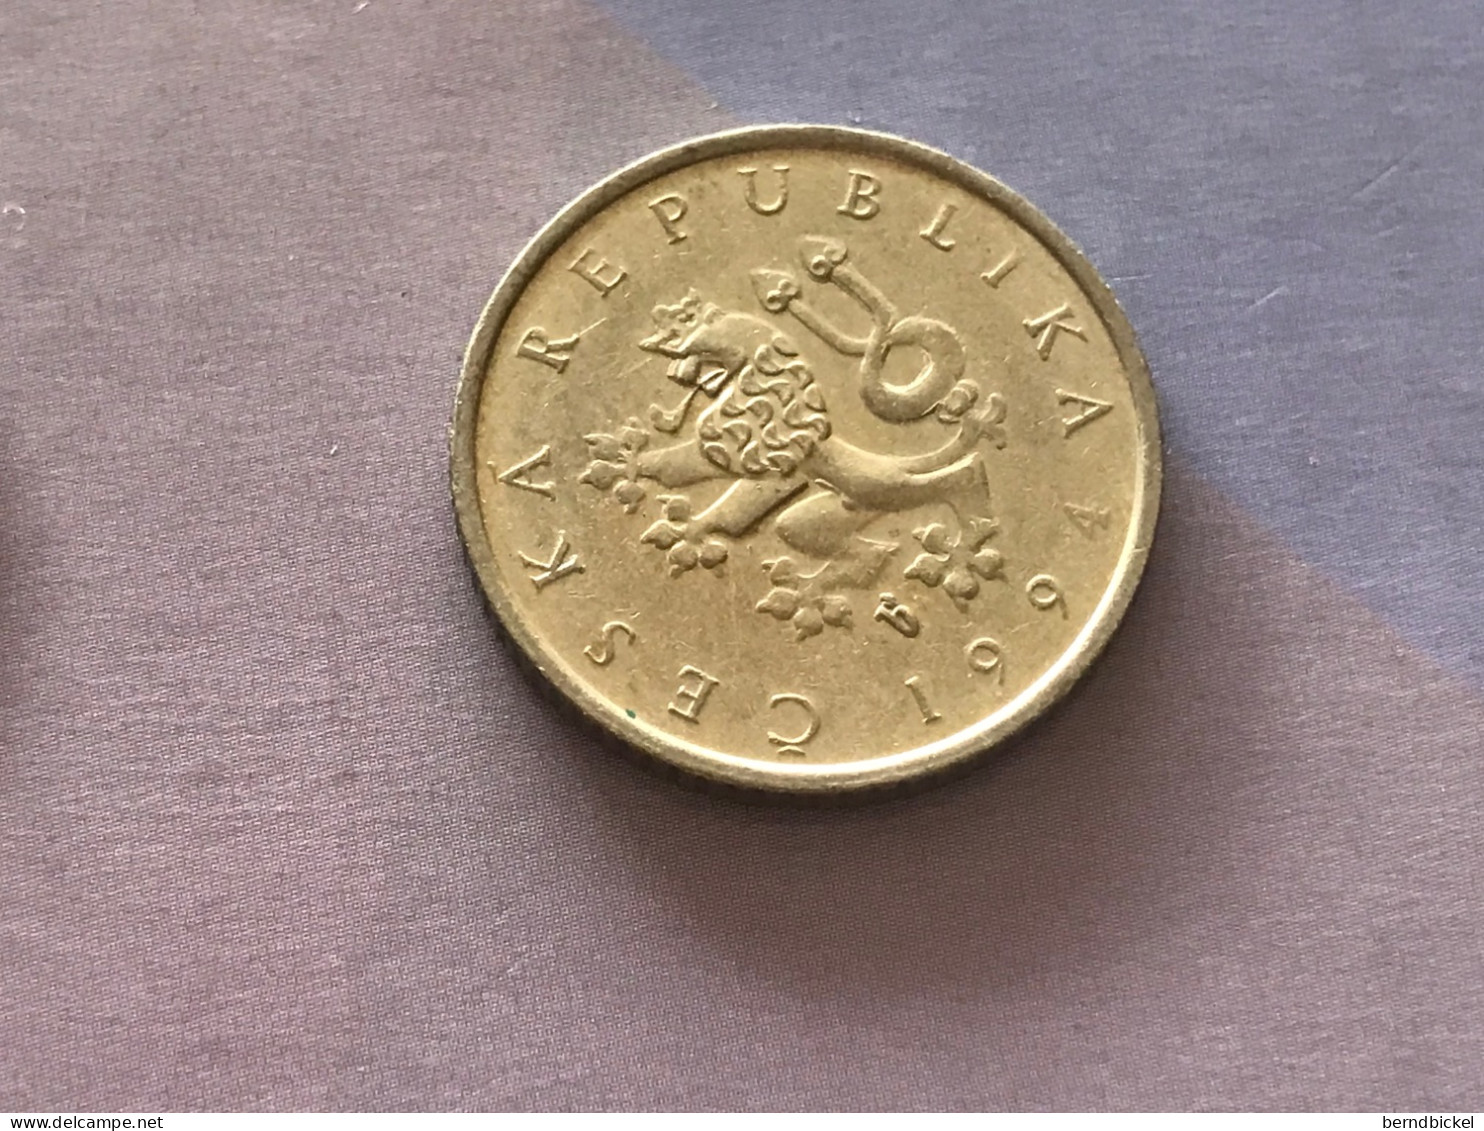 Münze Münzen Umlaufmünze Tschechische Republik 1 Krone 1994 - Tchéquie